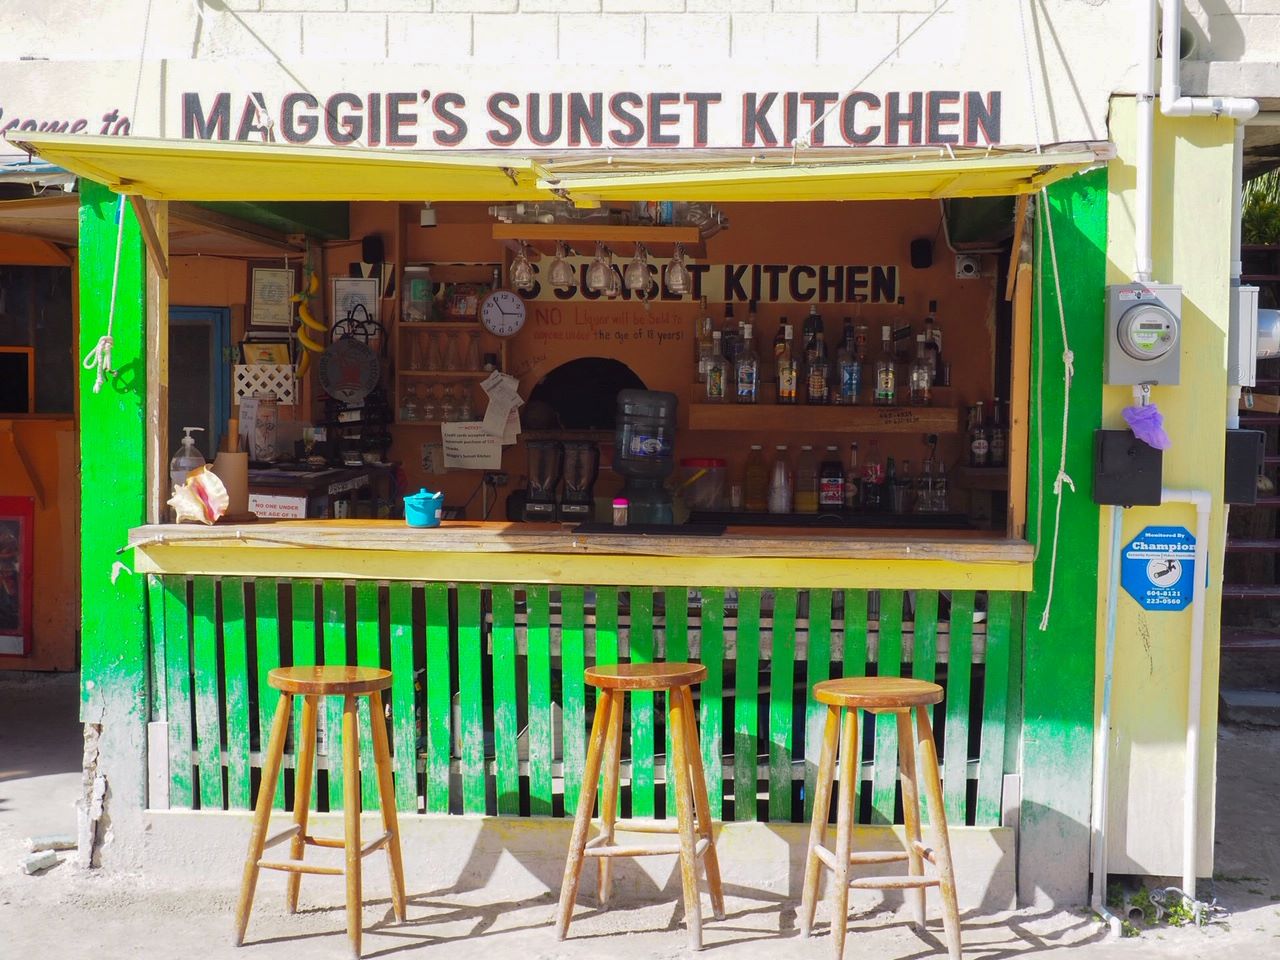 Maggie's Sunset Kitchen